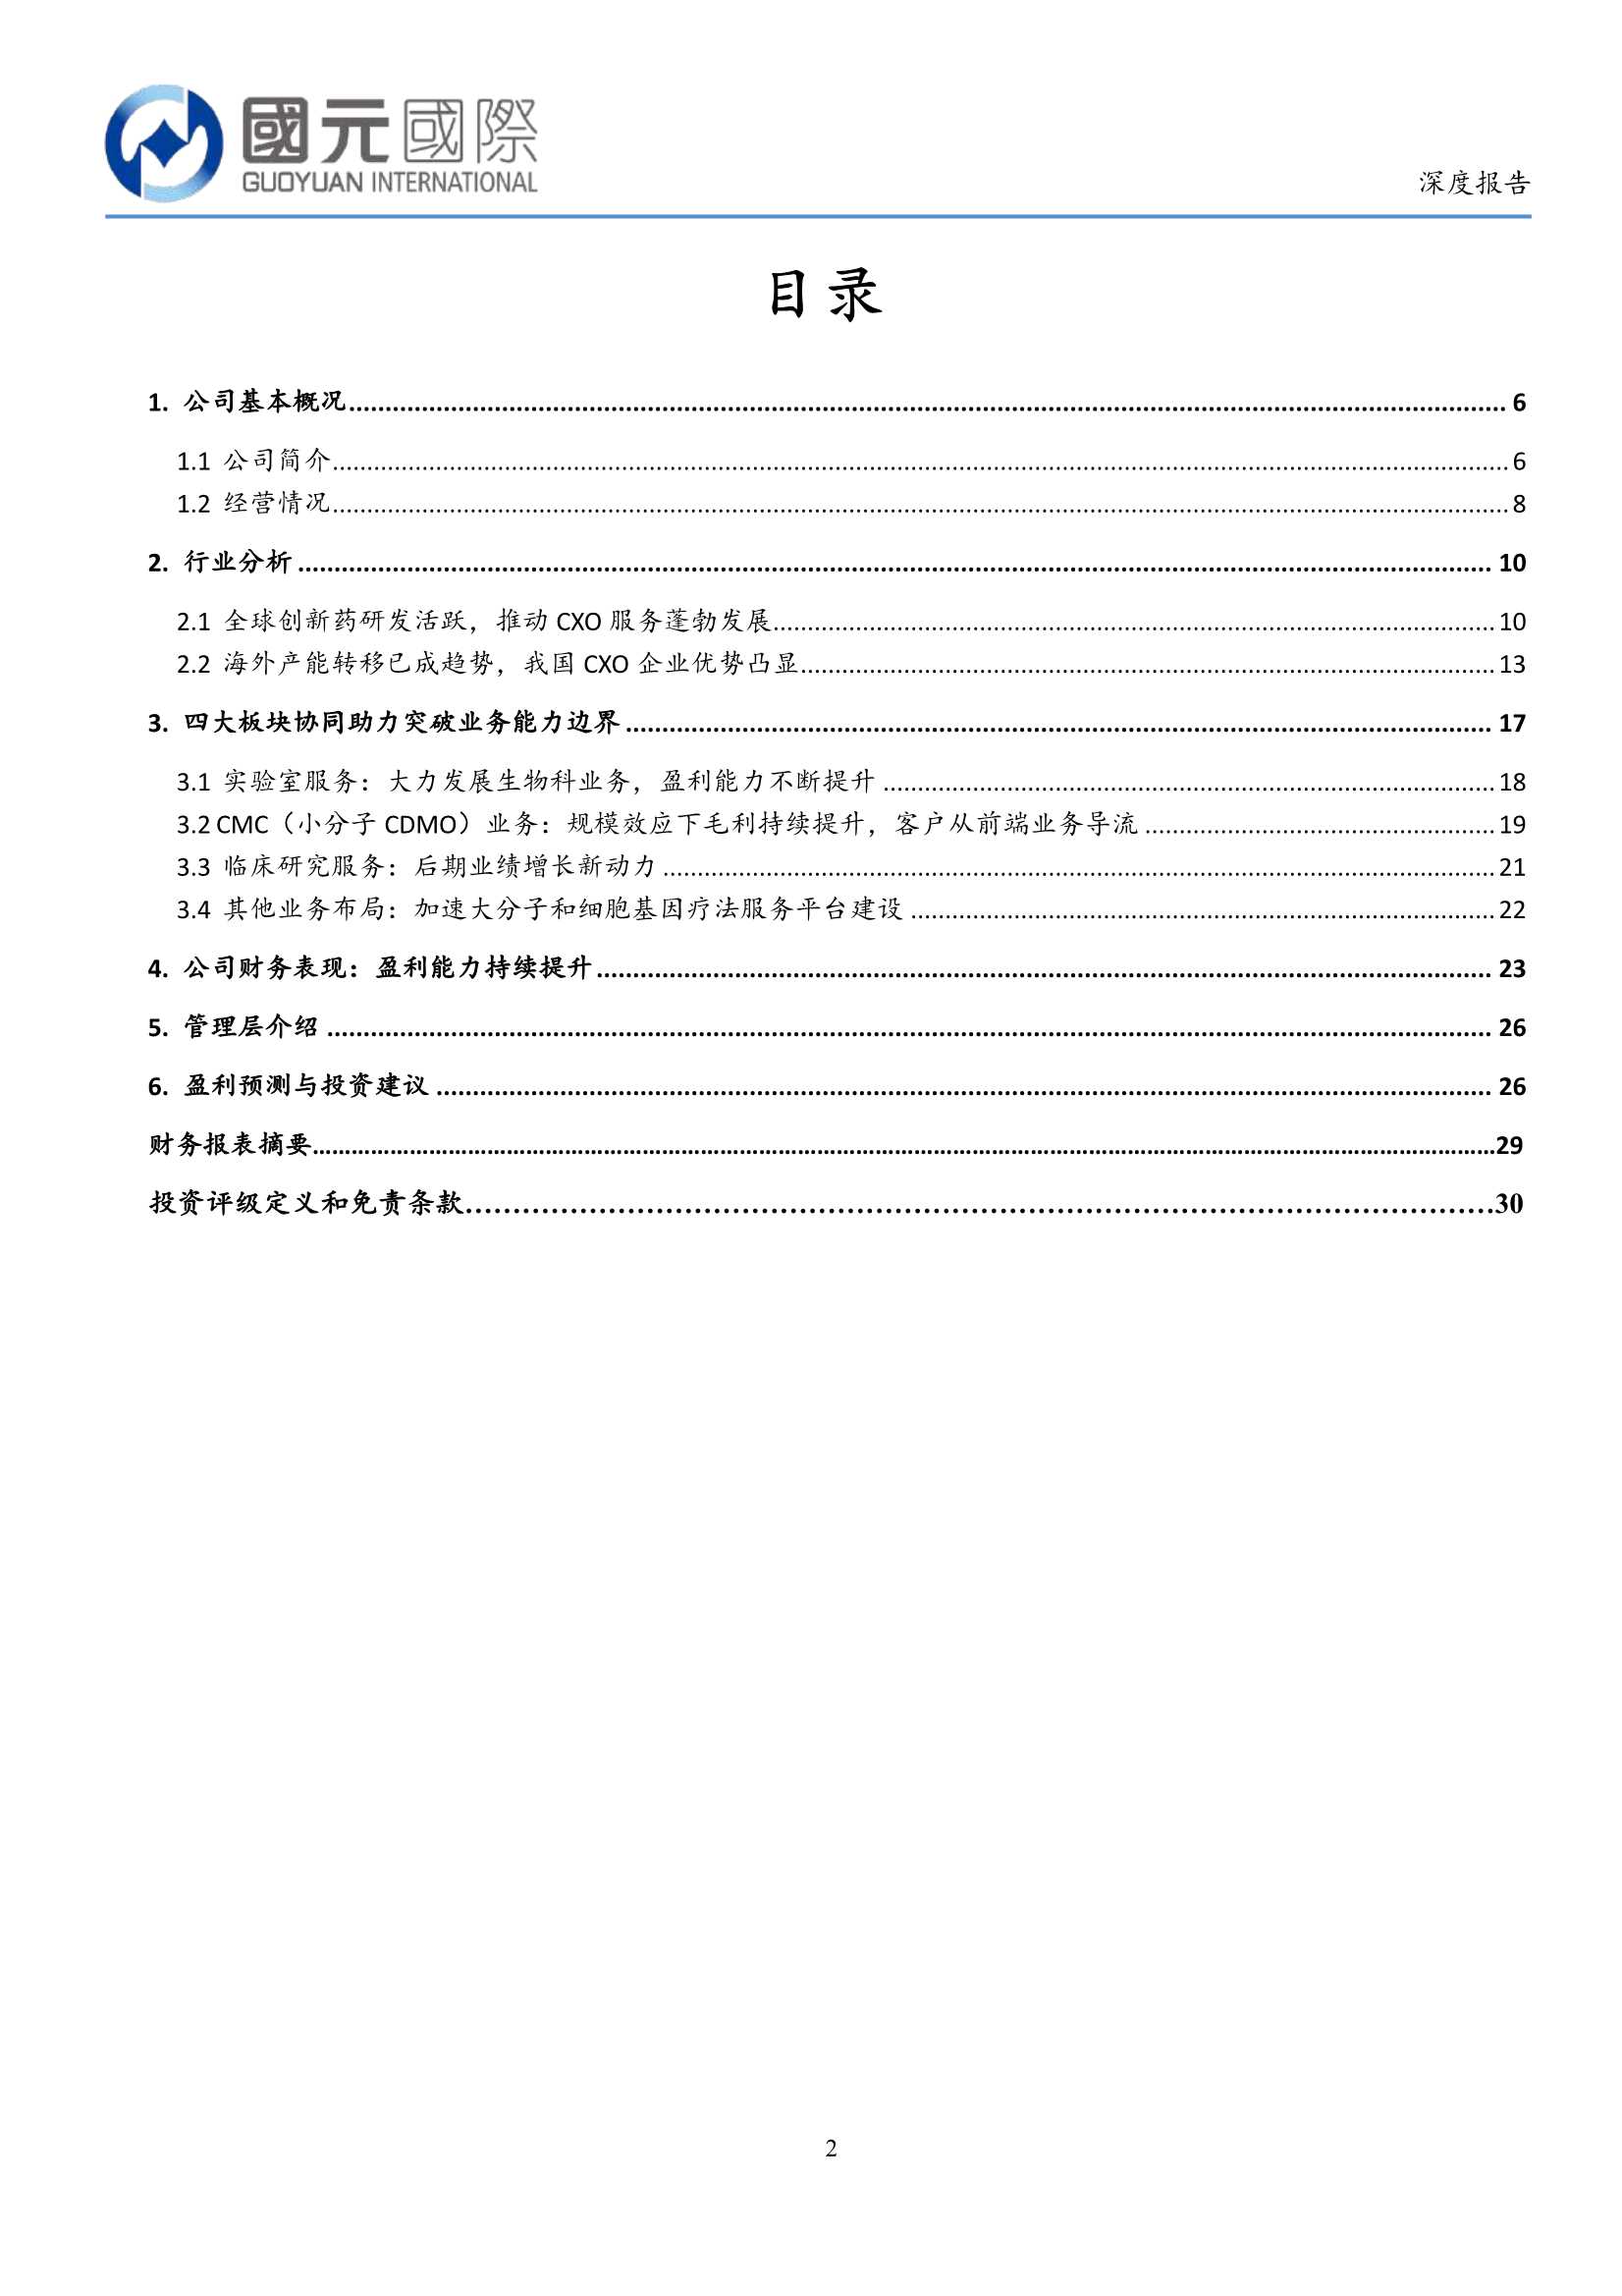 国元国际-康龙化成-3759.HK-全球领先的研发一体化服务平台-20220301-30页